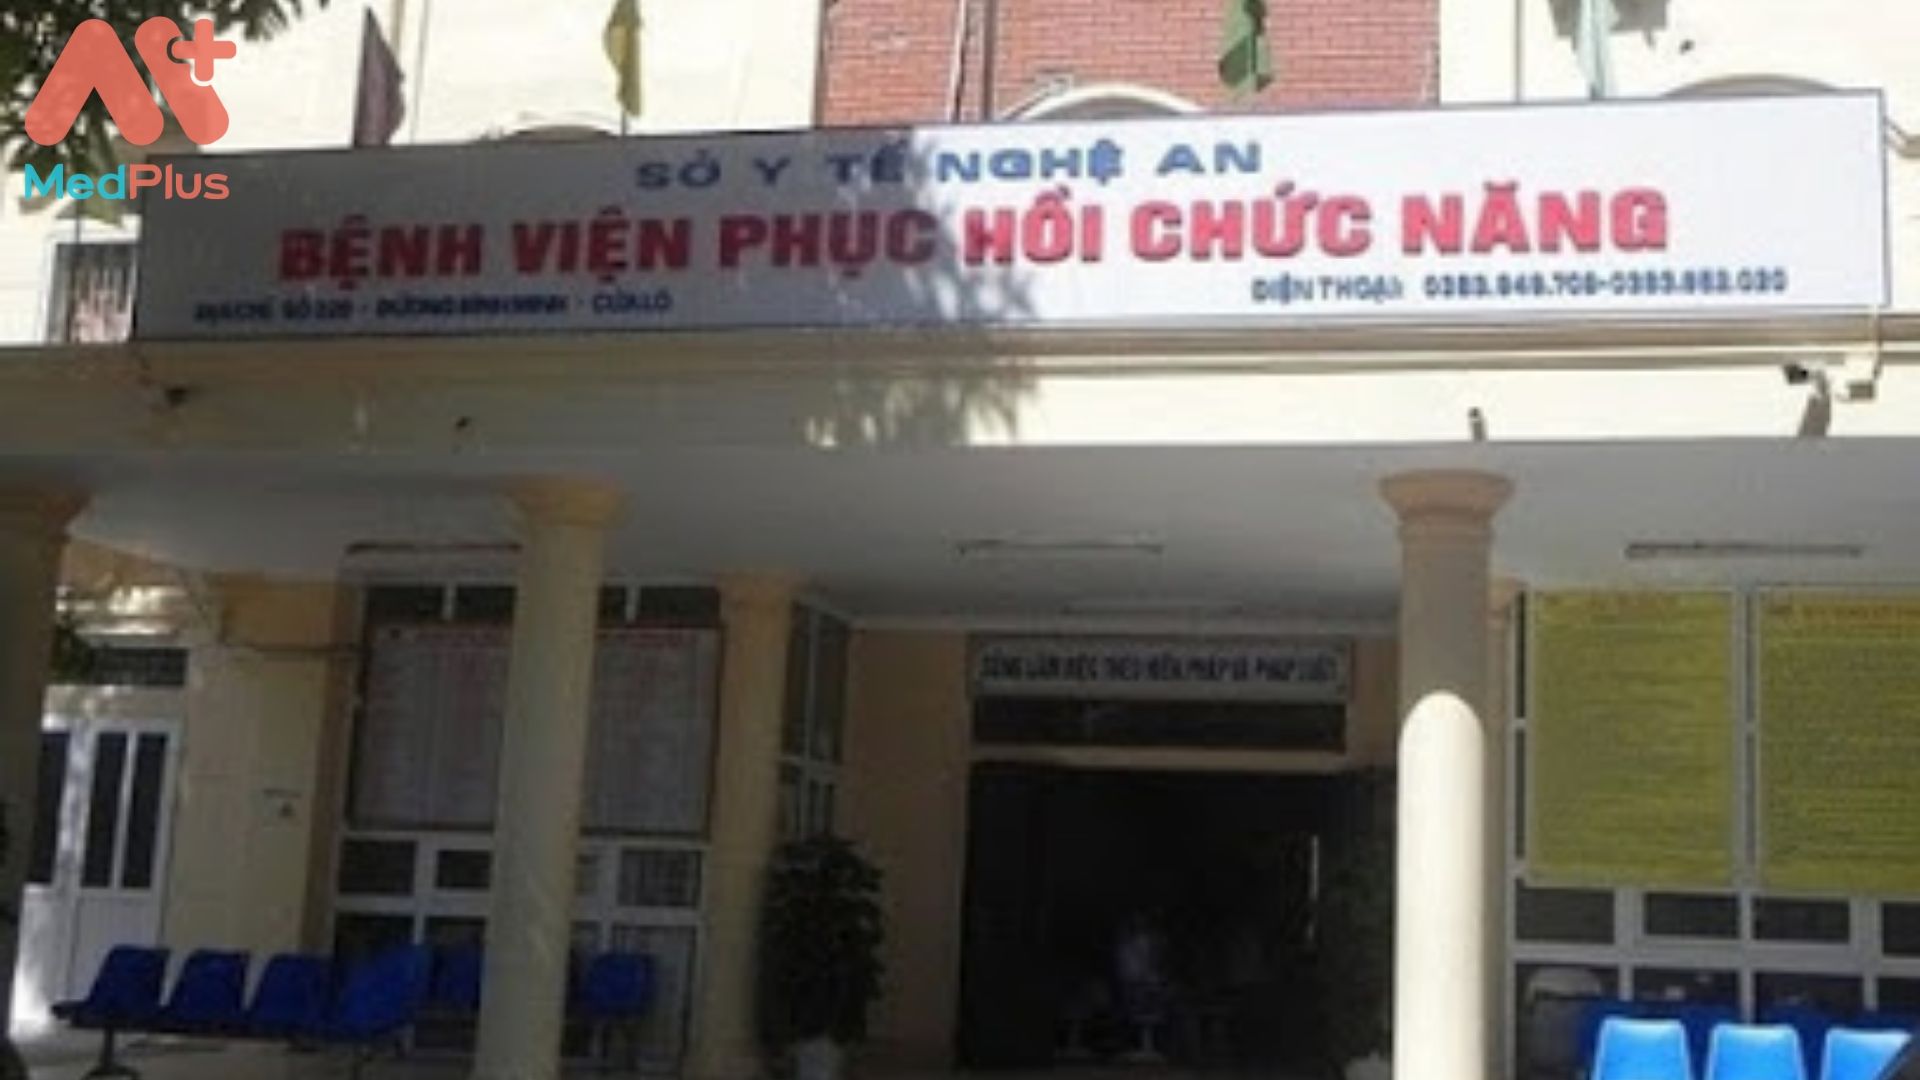 Bệnh viện Điều dưỡng và phục hồi chức năng tỉnh Nghệ An